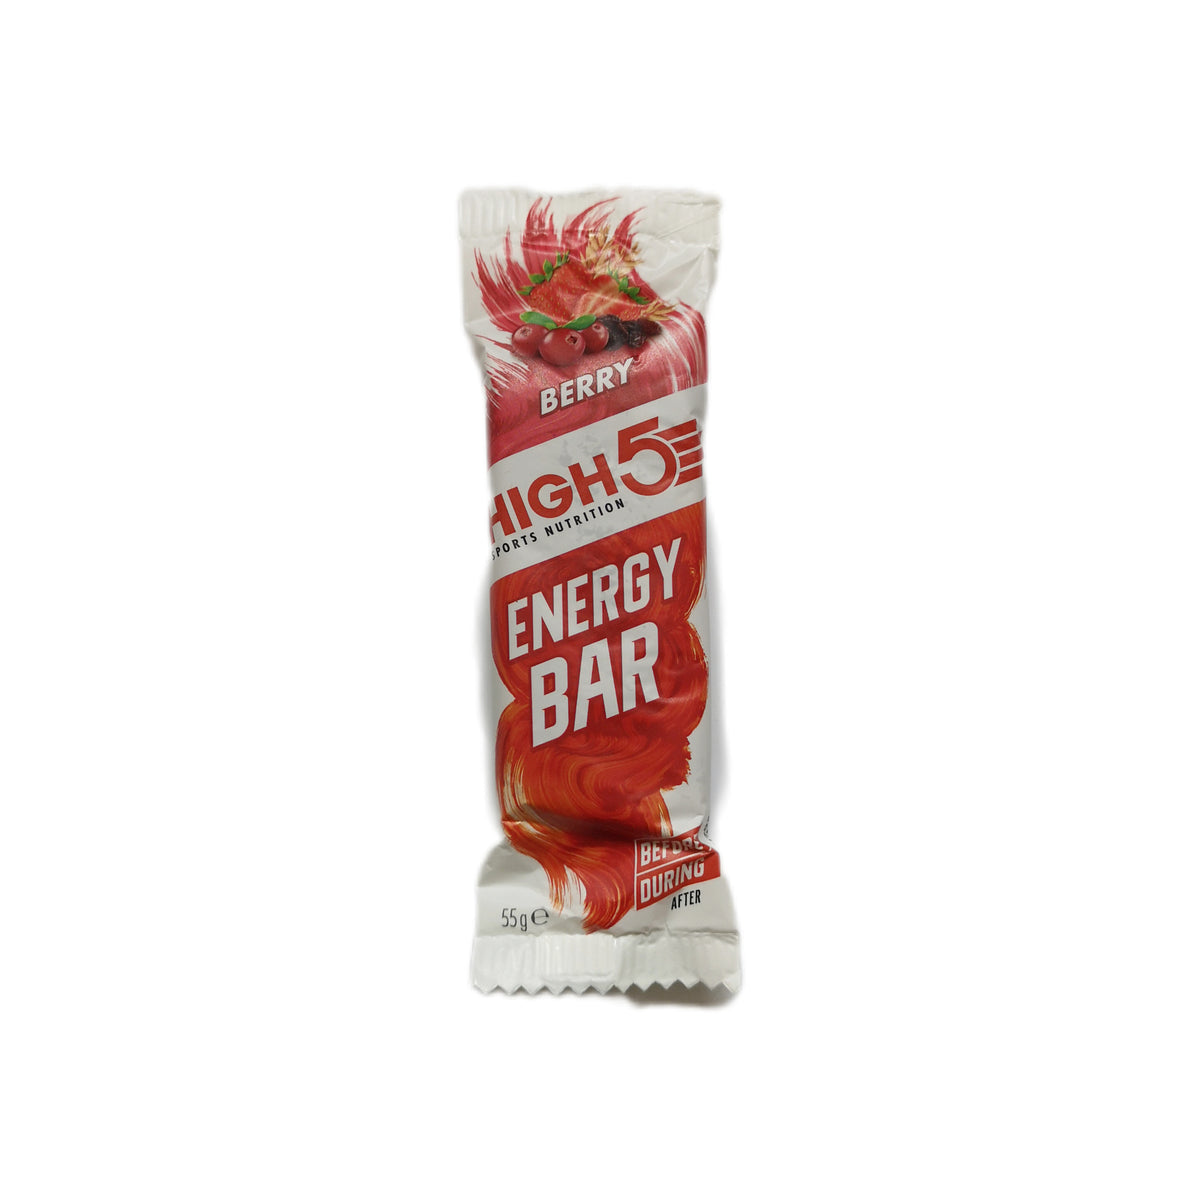 Energy Bar- High 5